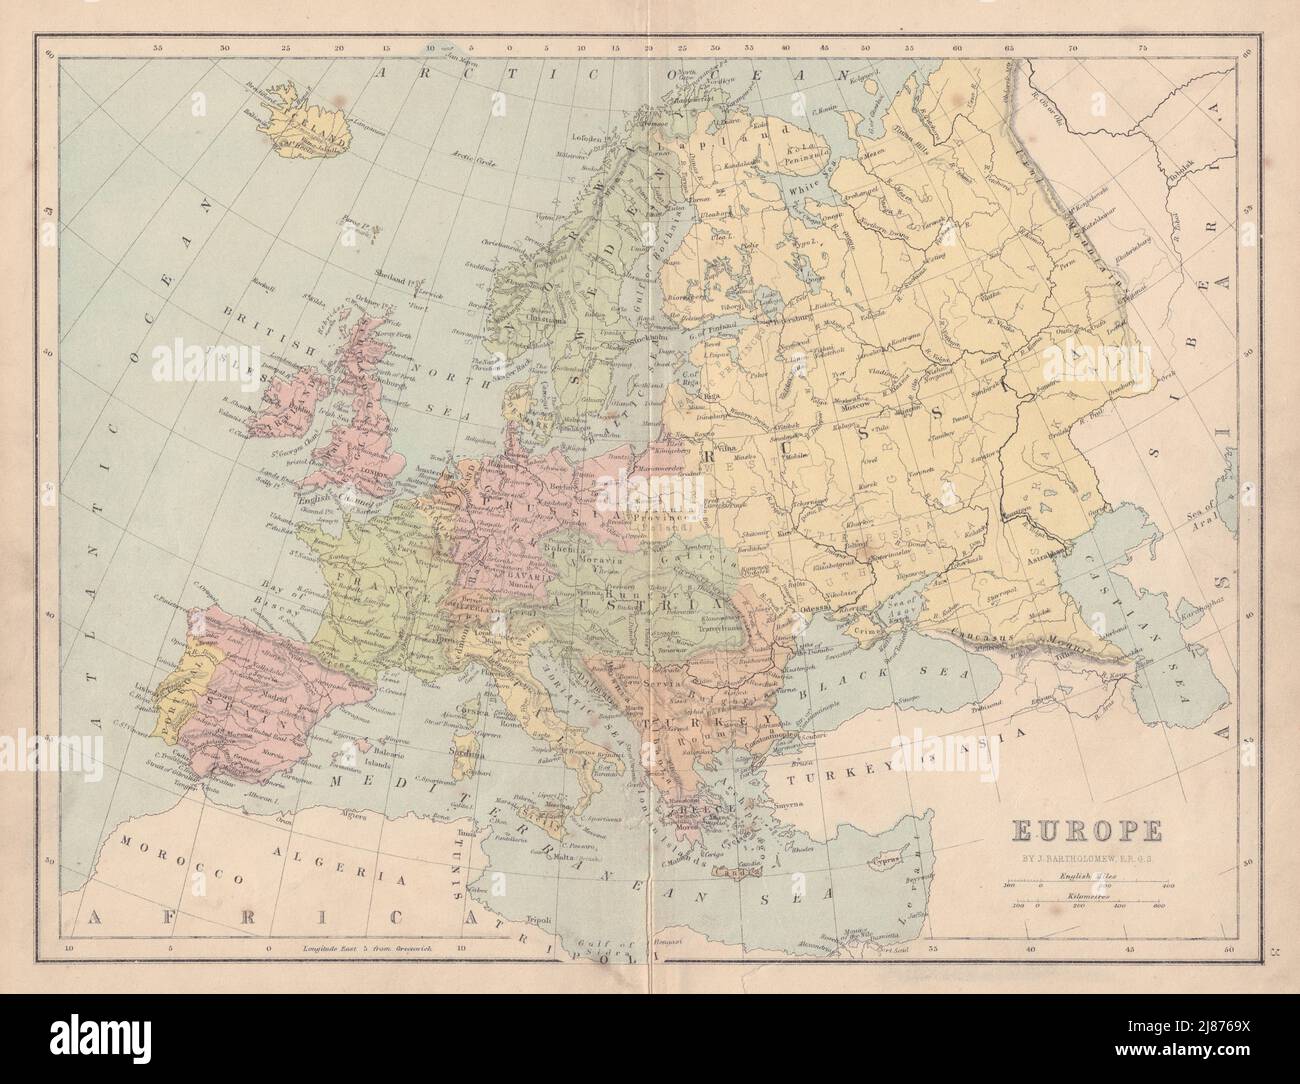 EUROPA política. Alemania Unida marcada como Prusia. COLLINS 1873 mapa antiguo Foto de stock